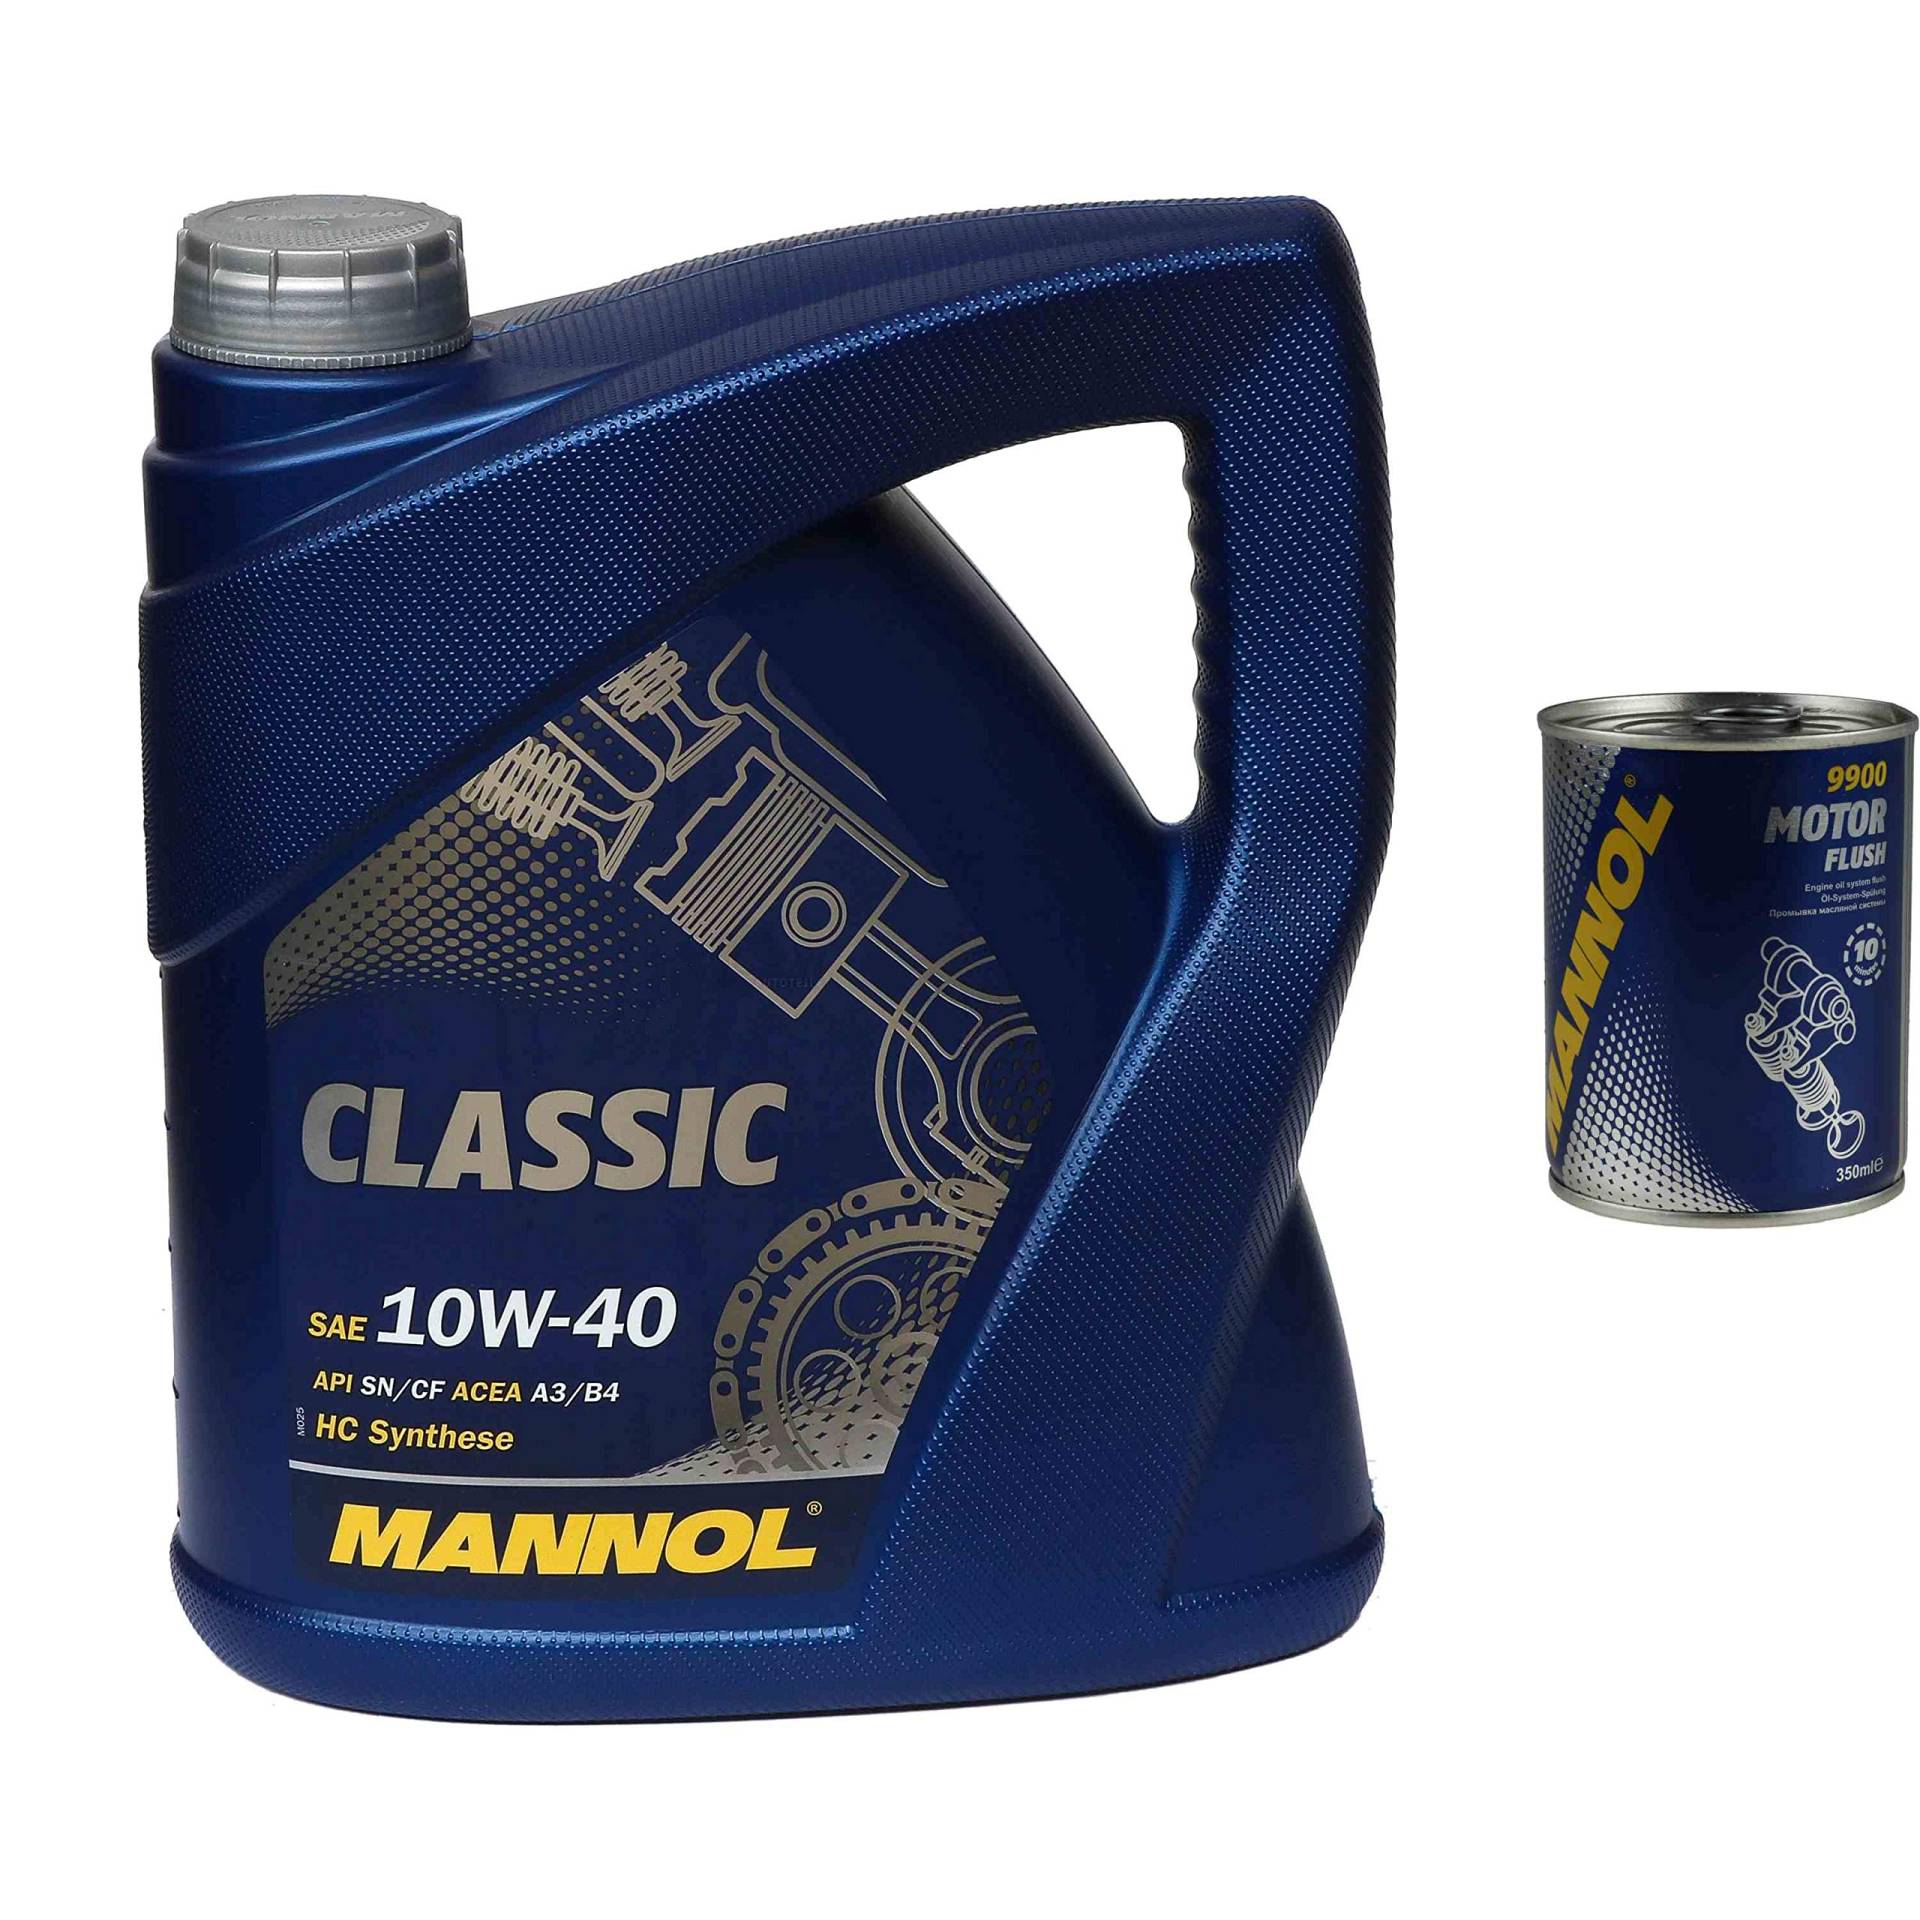 4L Motoröl MANNOL Classic 10W-40 1x MANNOL Motor Flush ADDITIV von Diederichs